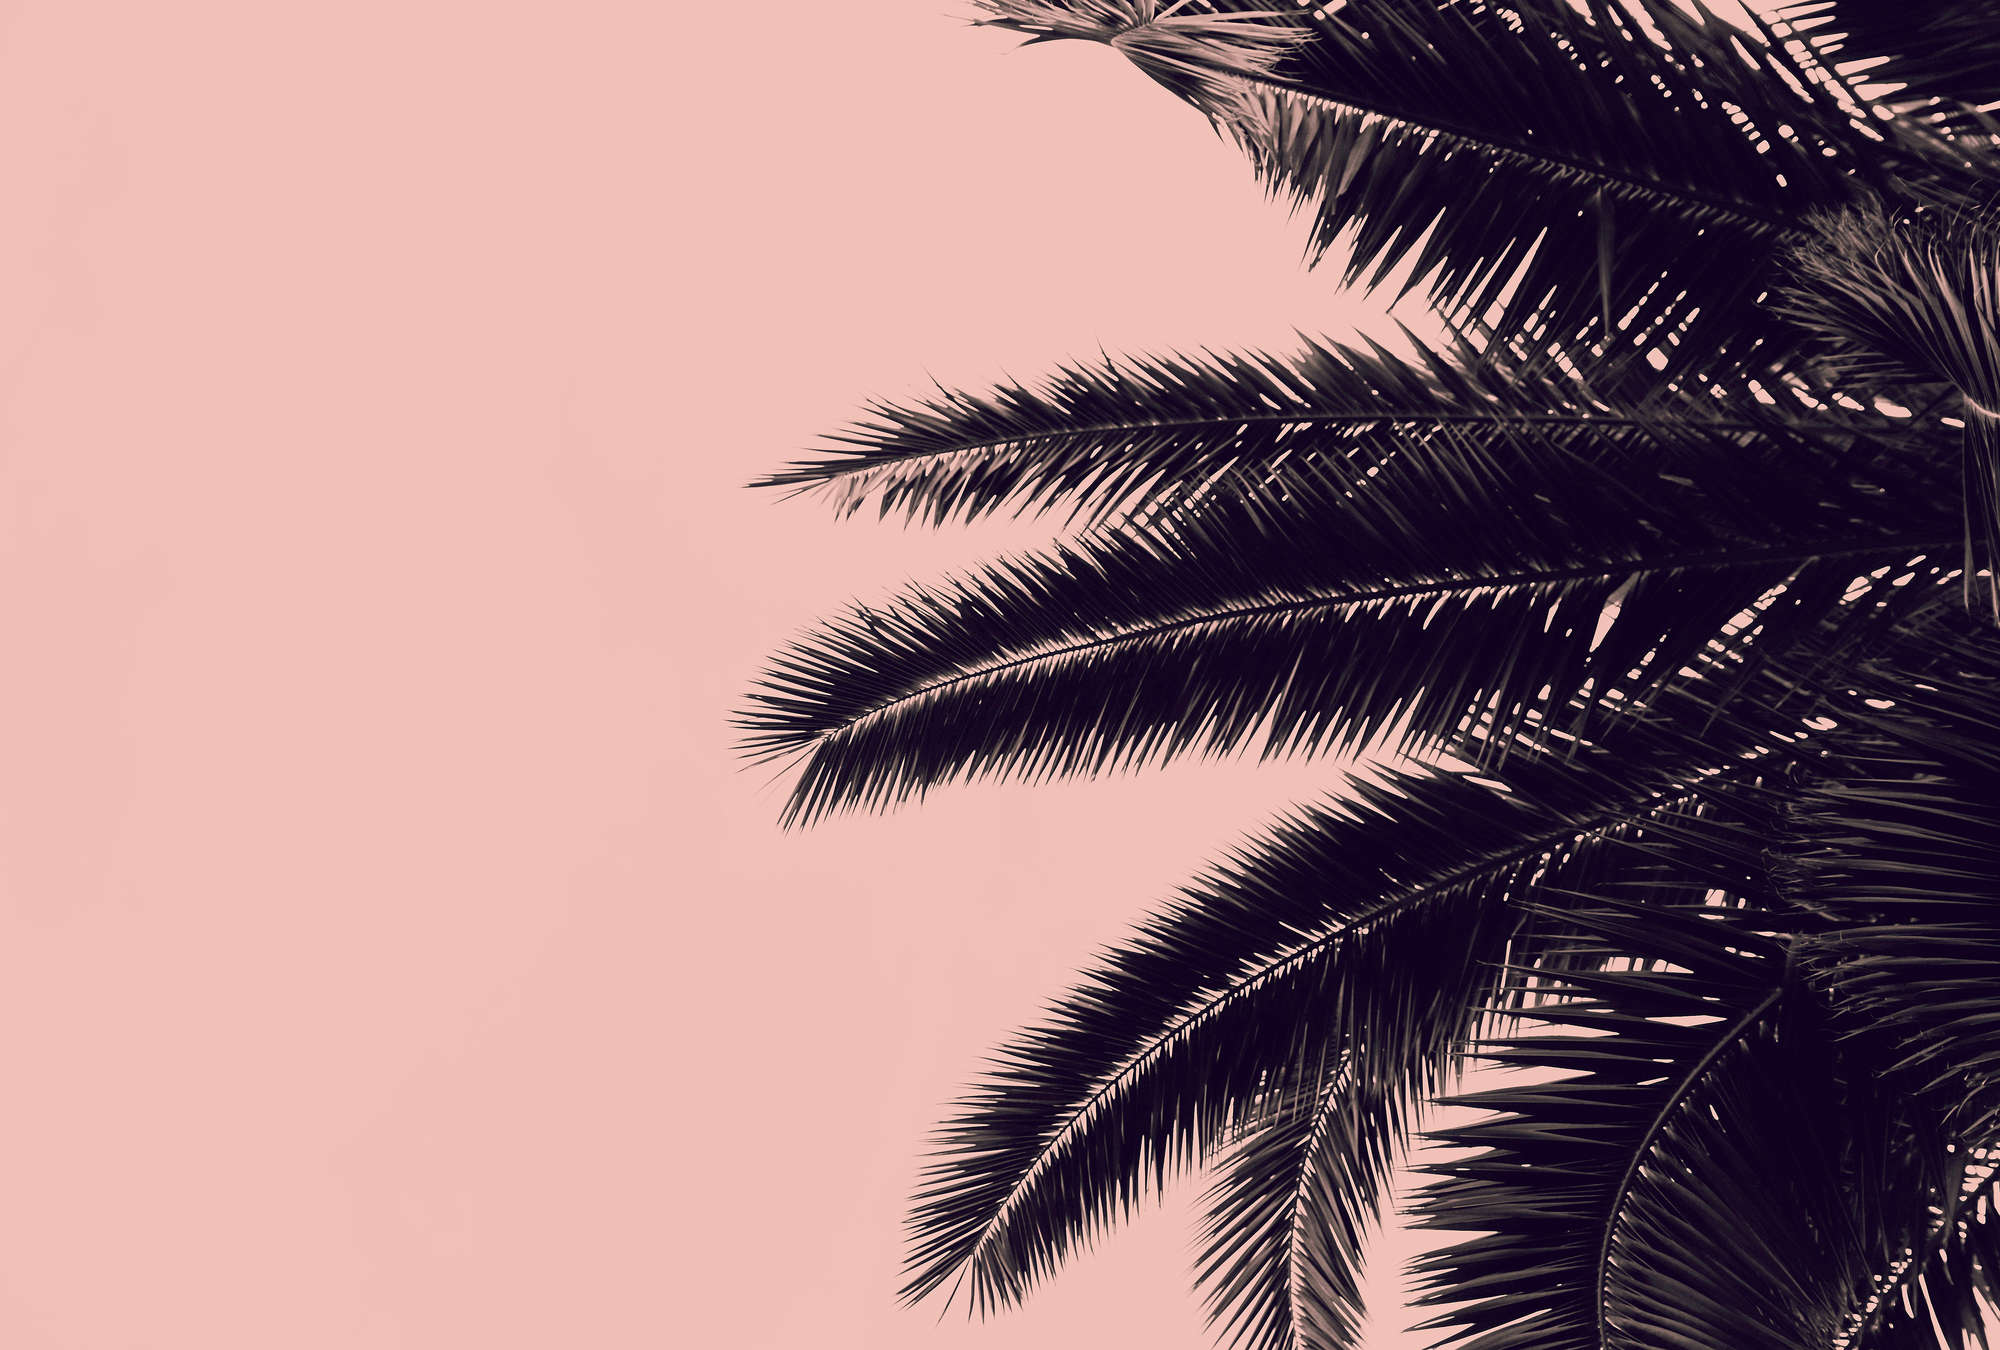             Carta da parati rosa con foglie di palma nere
        